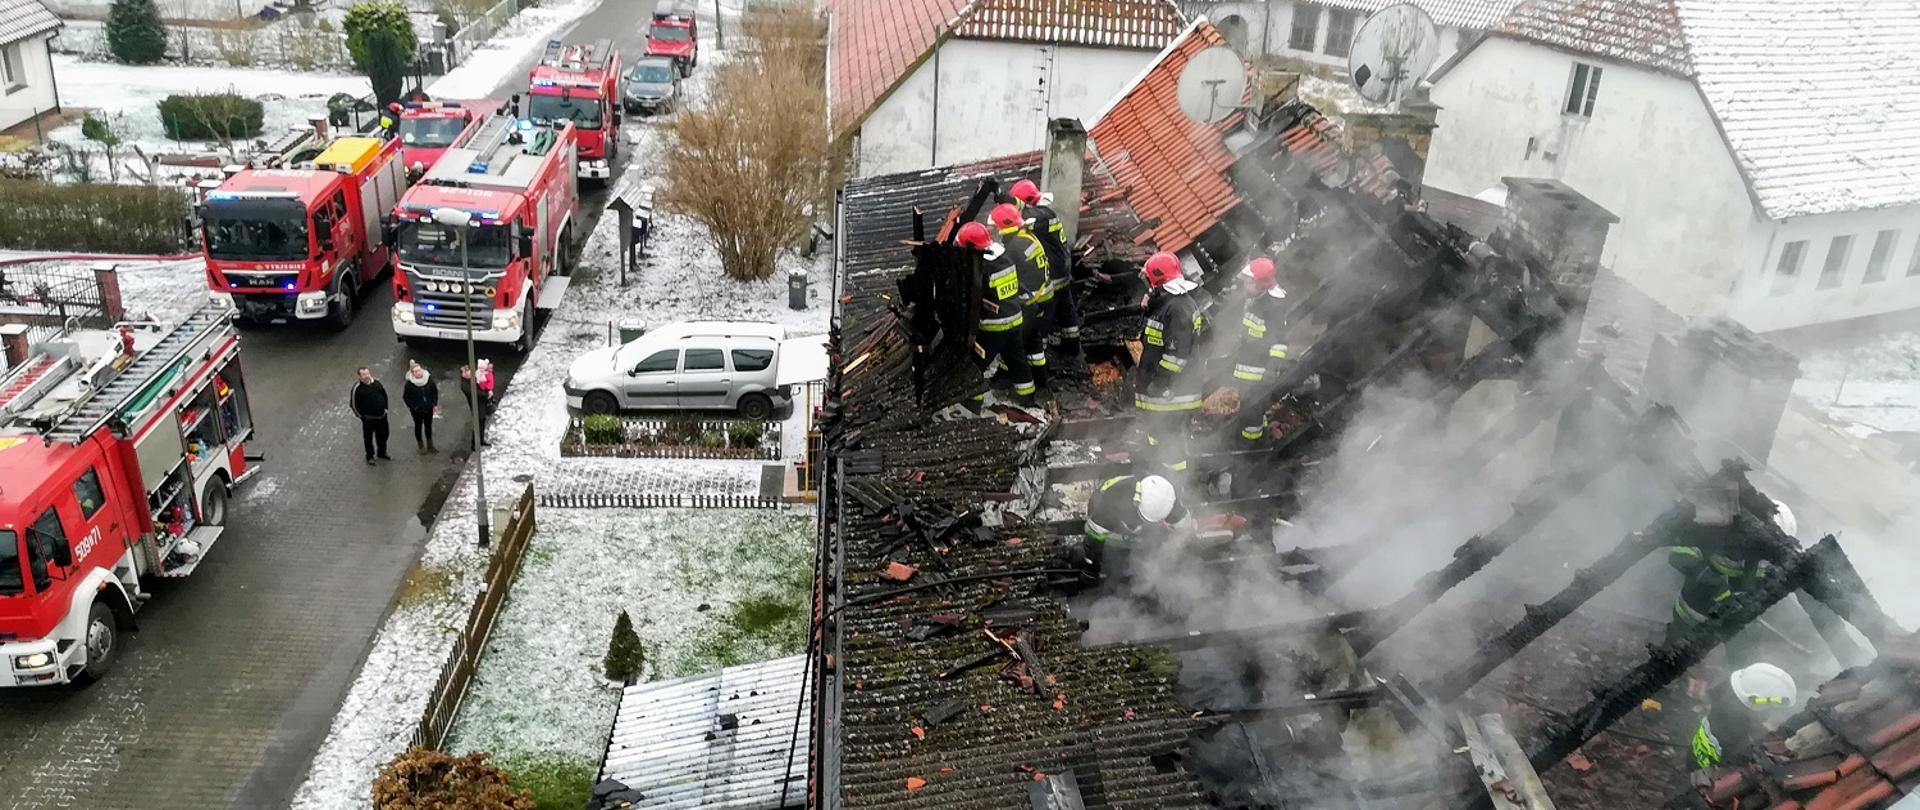 Zdjęcie przedstawia akcję gaśniczą z pożaru budynku wielorodzinnego